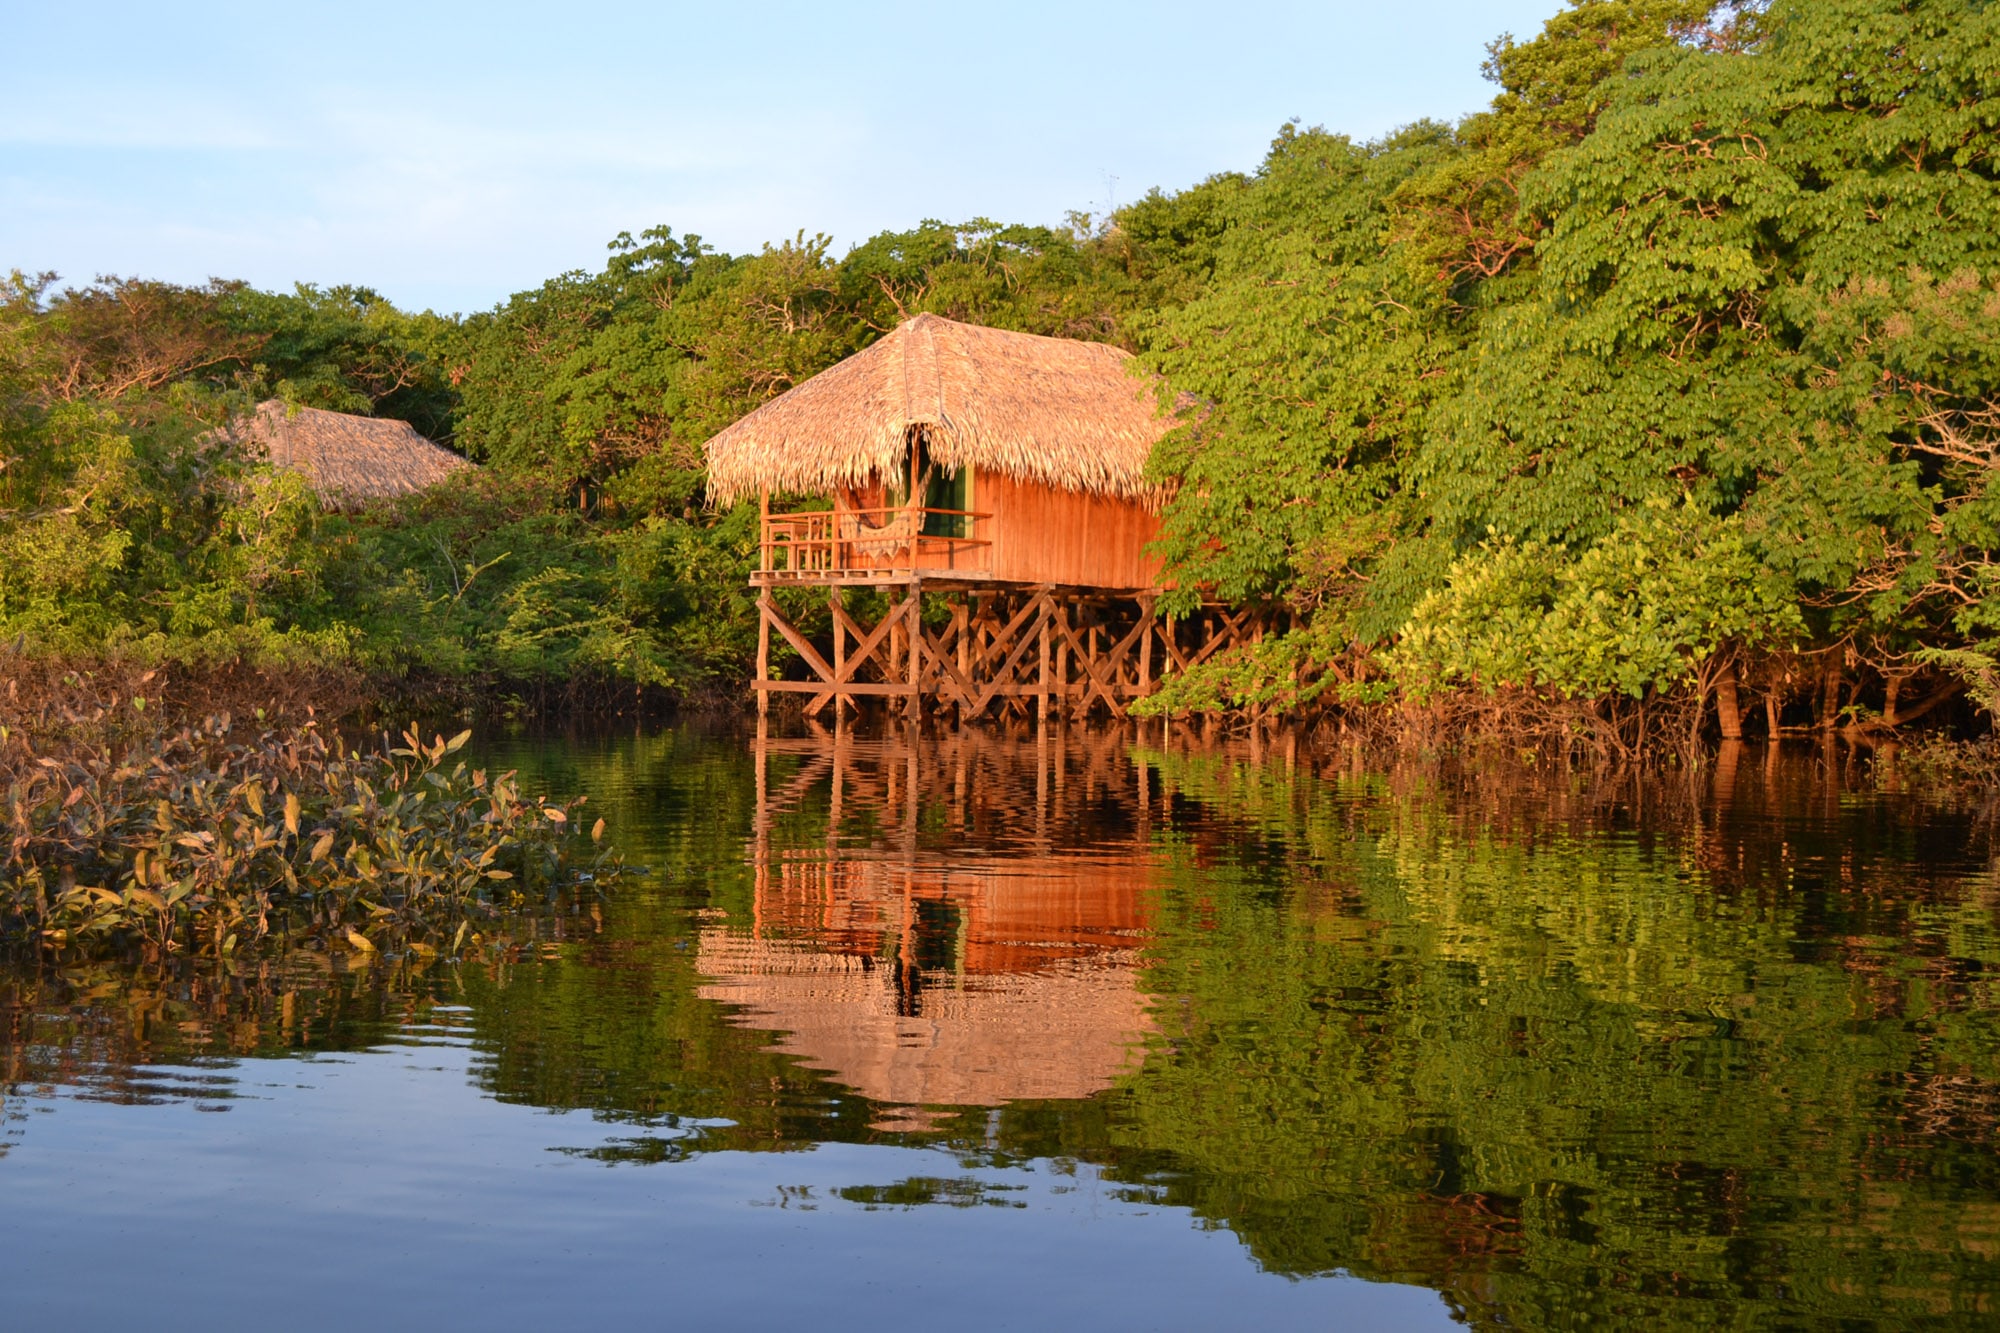 juma amazon lodge - melhores hotéis da amazônia